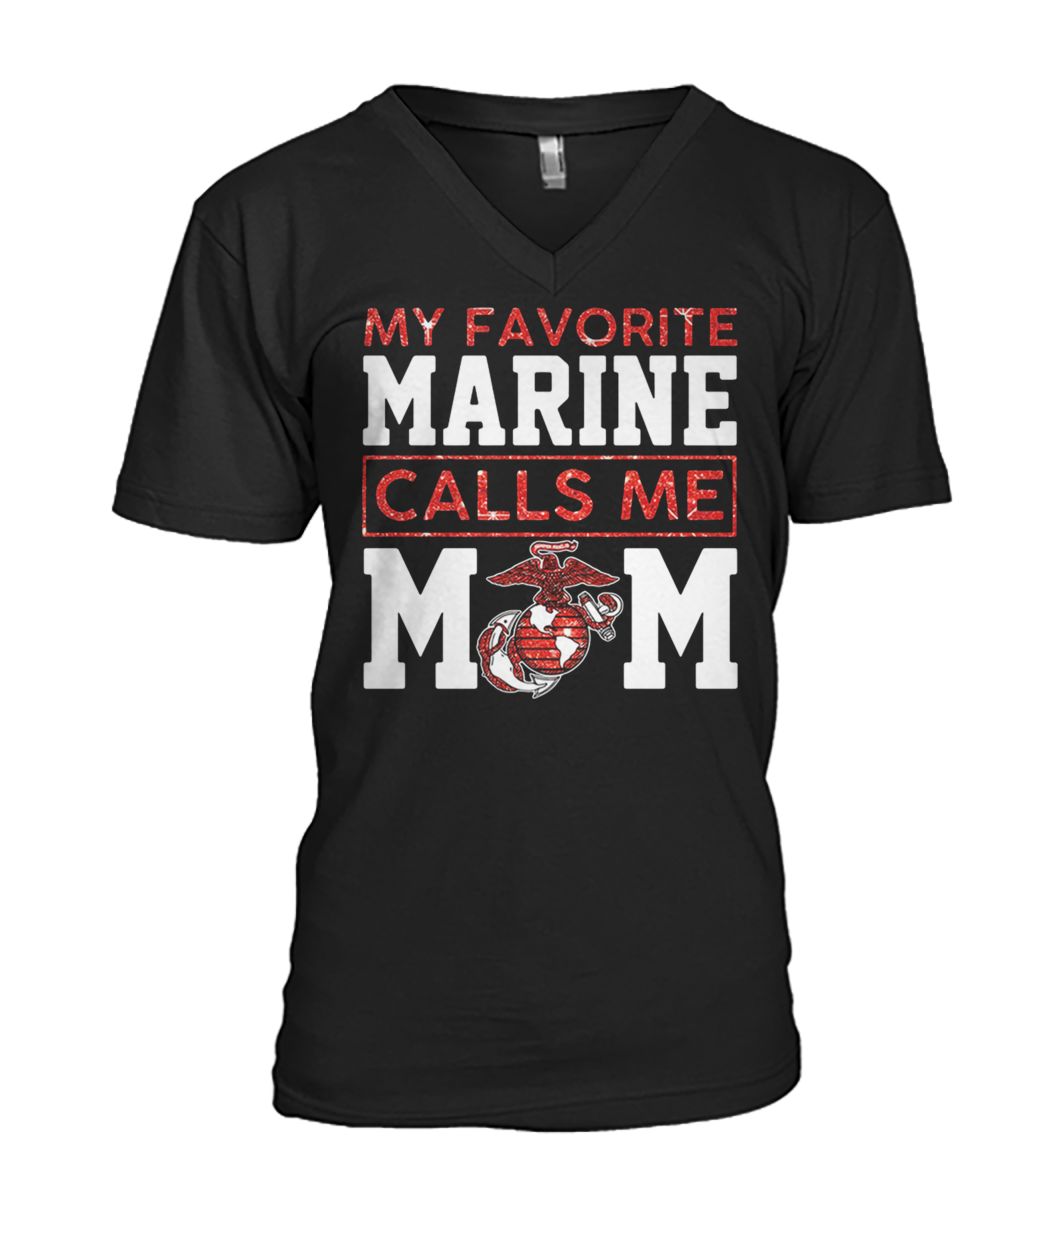 My favorite marine calls me mom mens v-neck